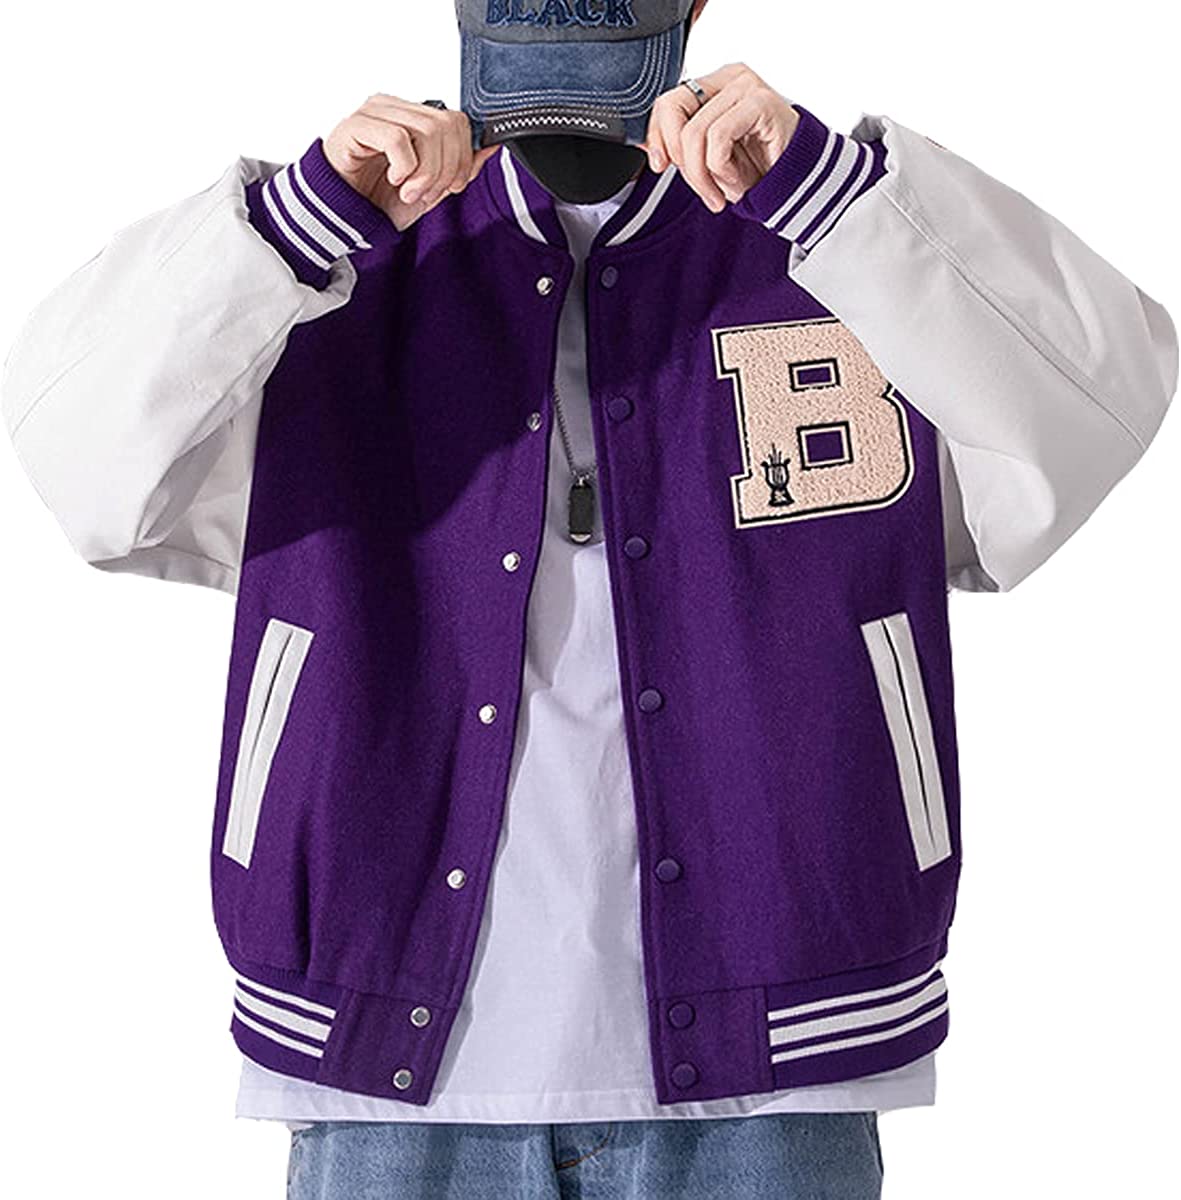  CORIRESHA Men's Vintage Baseball Jacket Fashion Hooded Plush  Embroidered Varsity Jacket : Clothing, Shoes & Jewelry